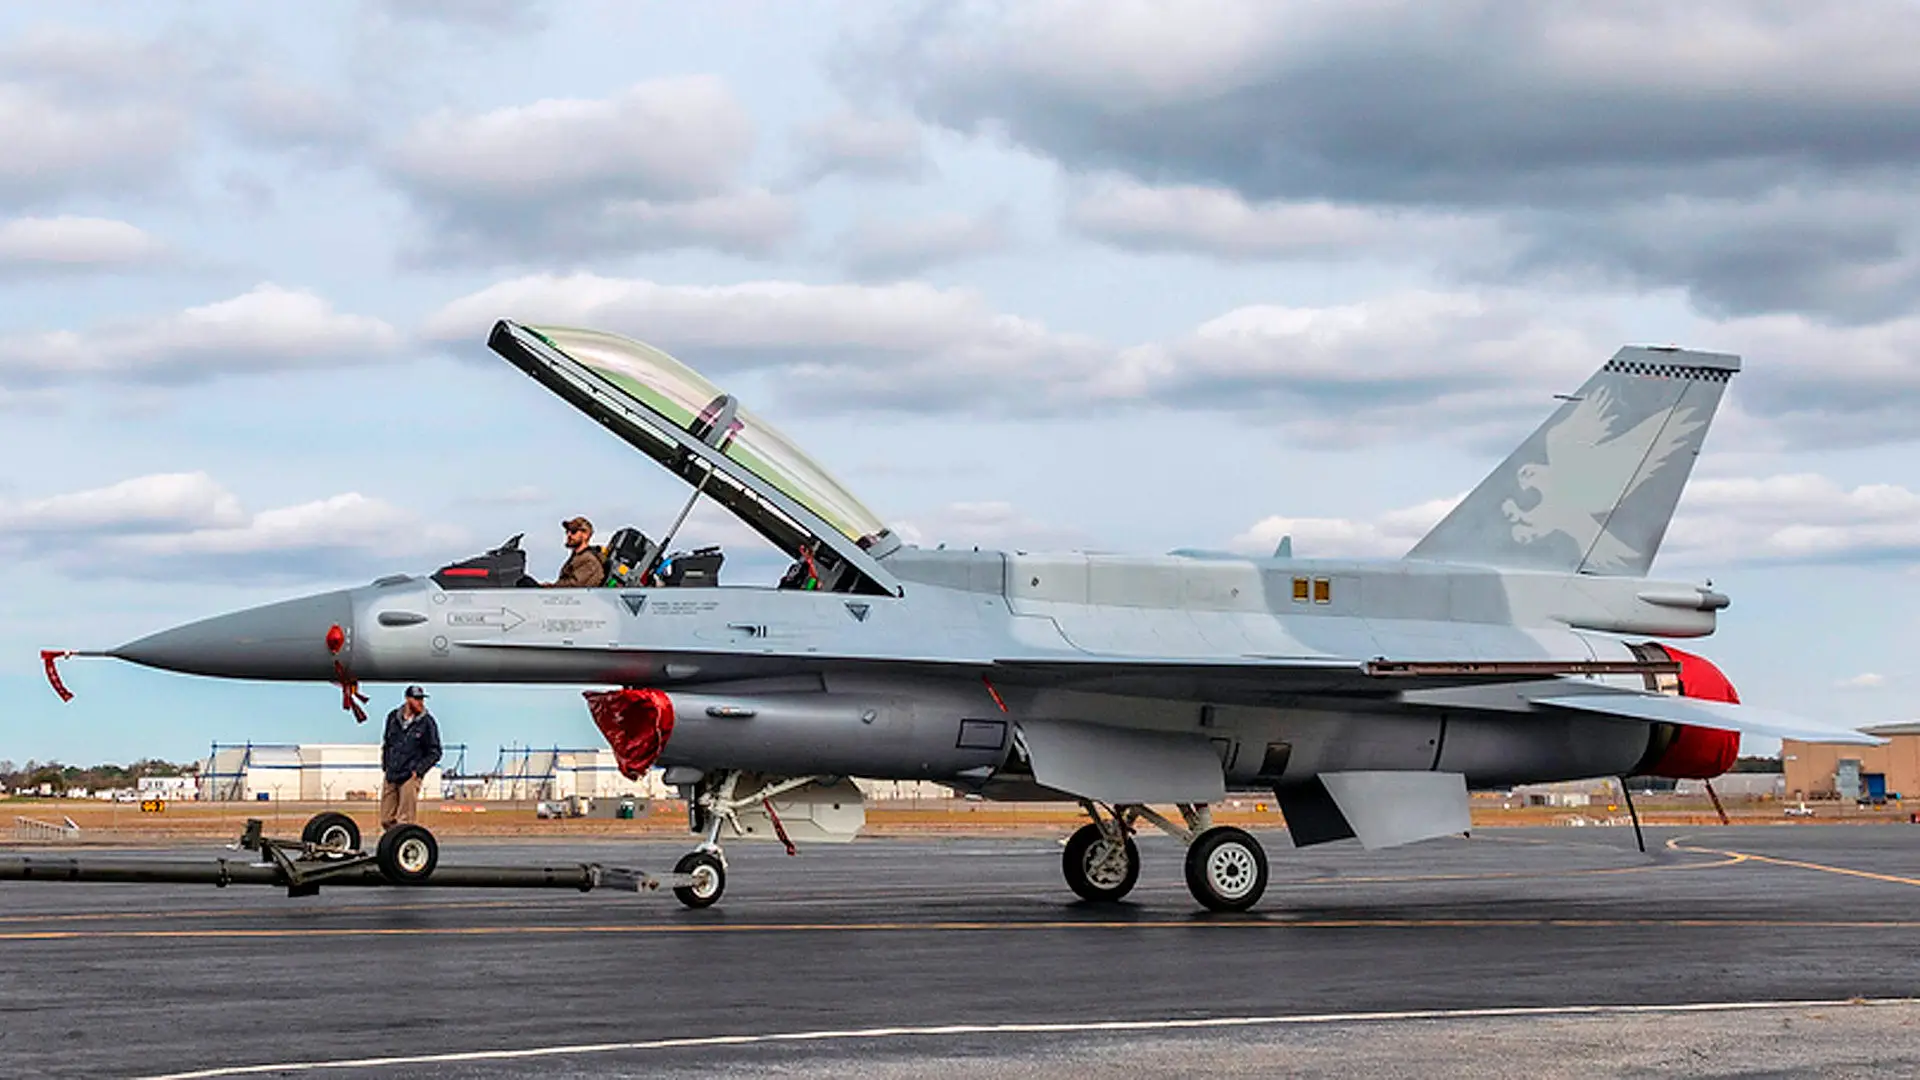 Northrop Grumman otrzymał 28,66 mln dolarów na rozwój radaru AN/APG-83 (SABR) dla F-16, który może jednocześnie śledzić 35 celów i zwiększyć zasięg wykrywania do 150 km